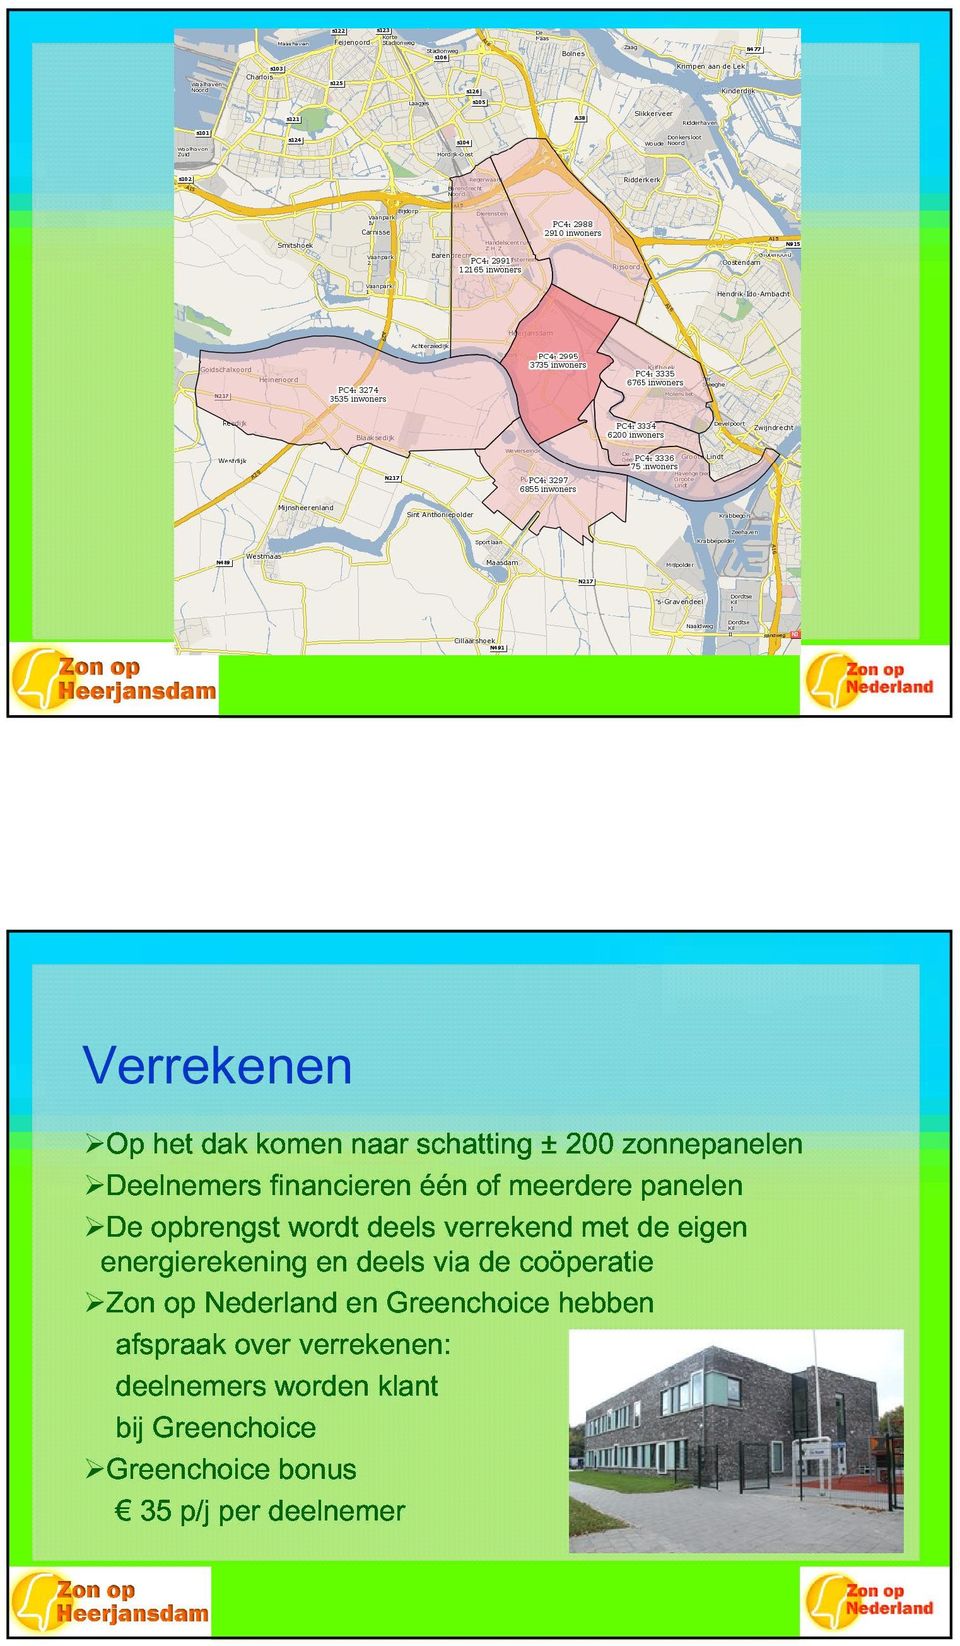 energierekening afspraak deelnemers Nederland over verrekenen: en en deels